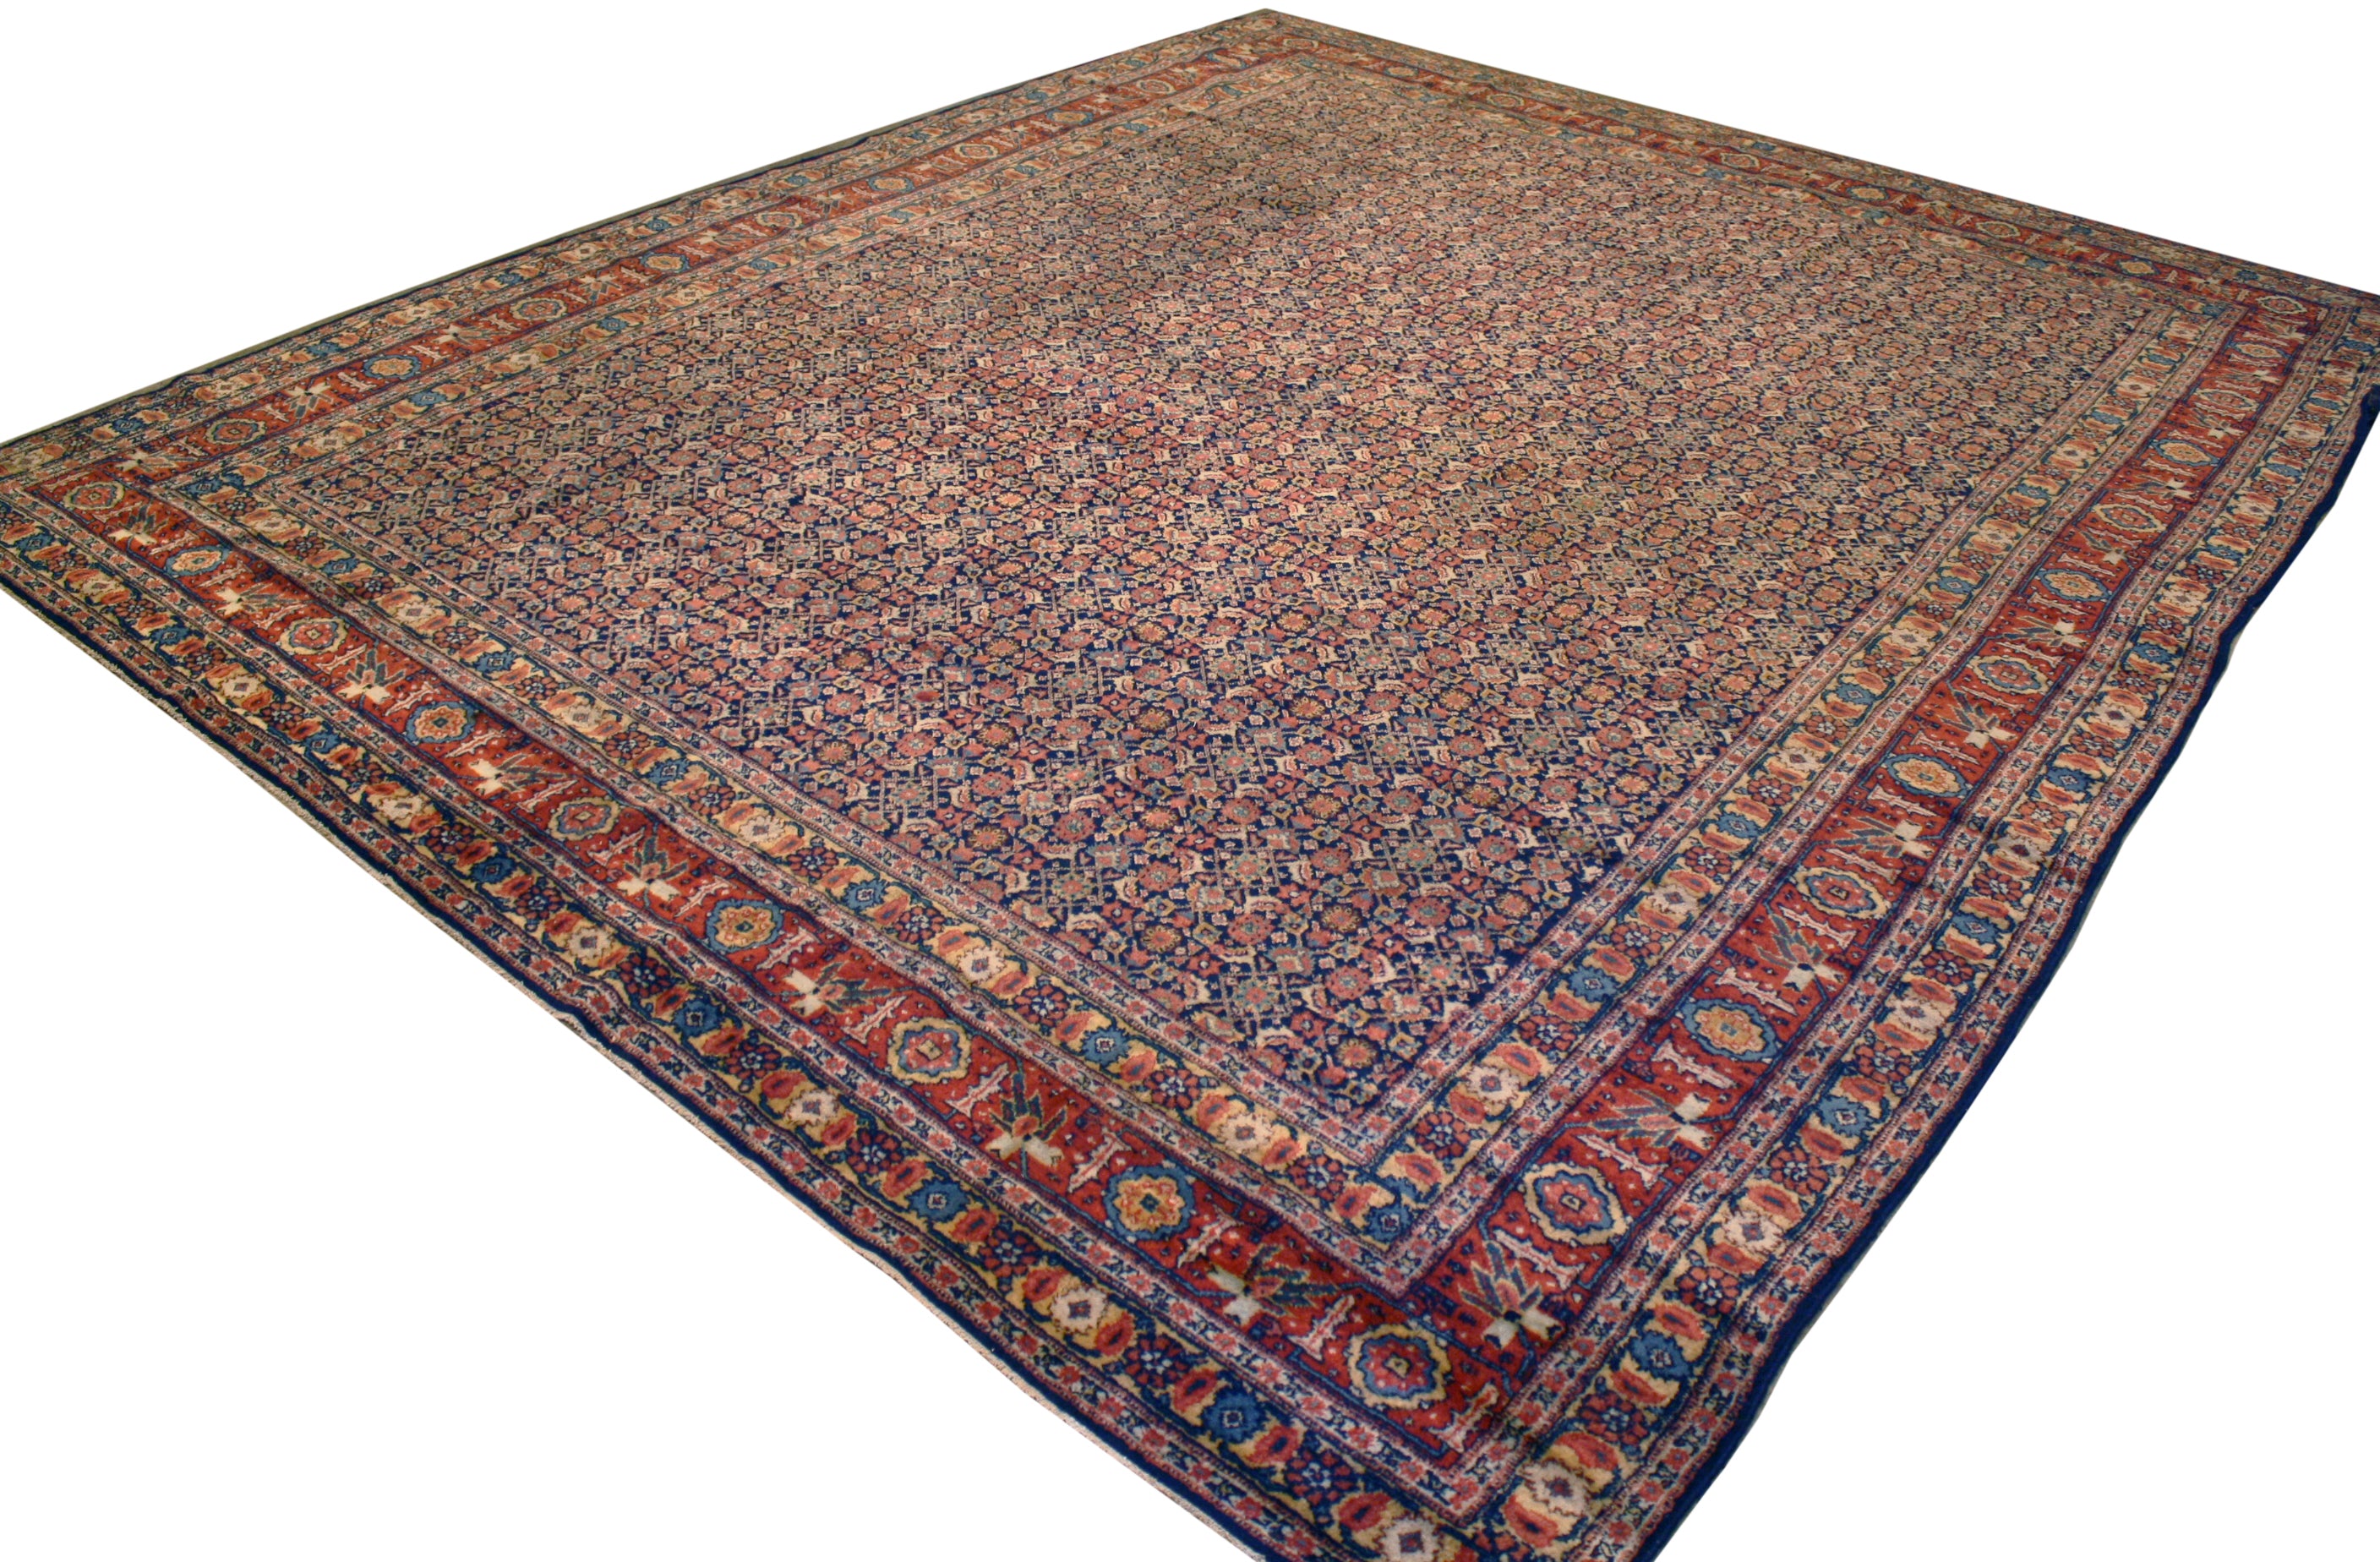 Repaired antique Persian rug